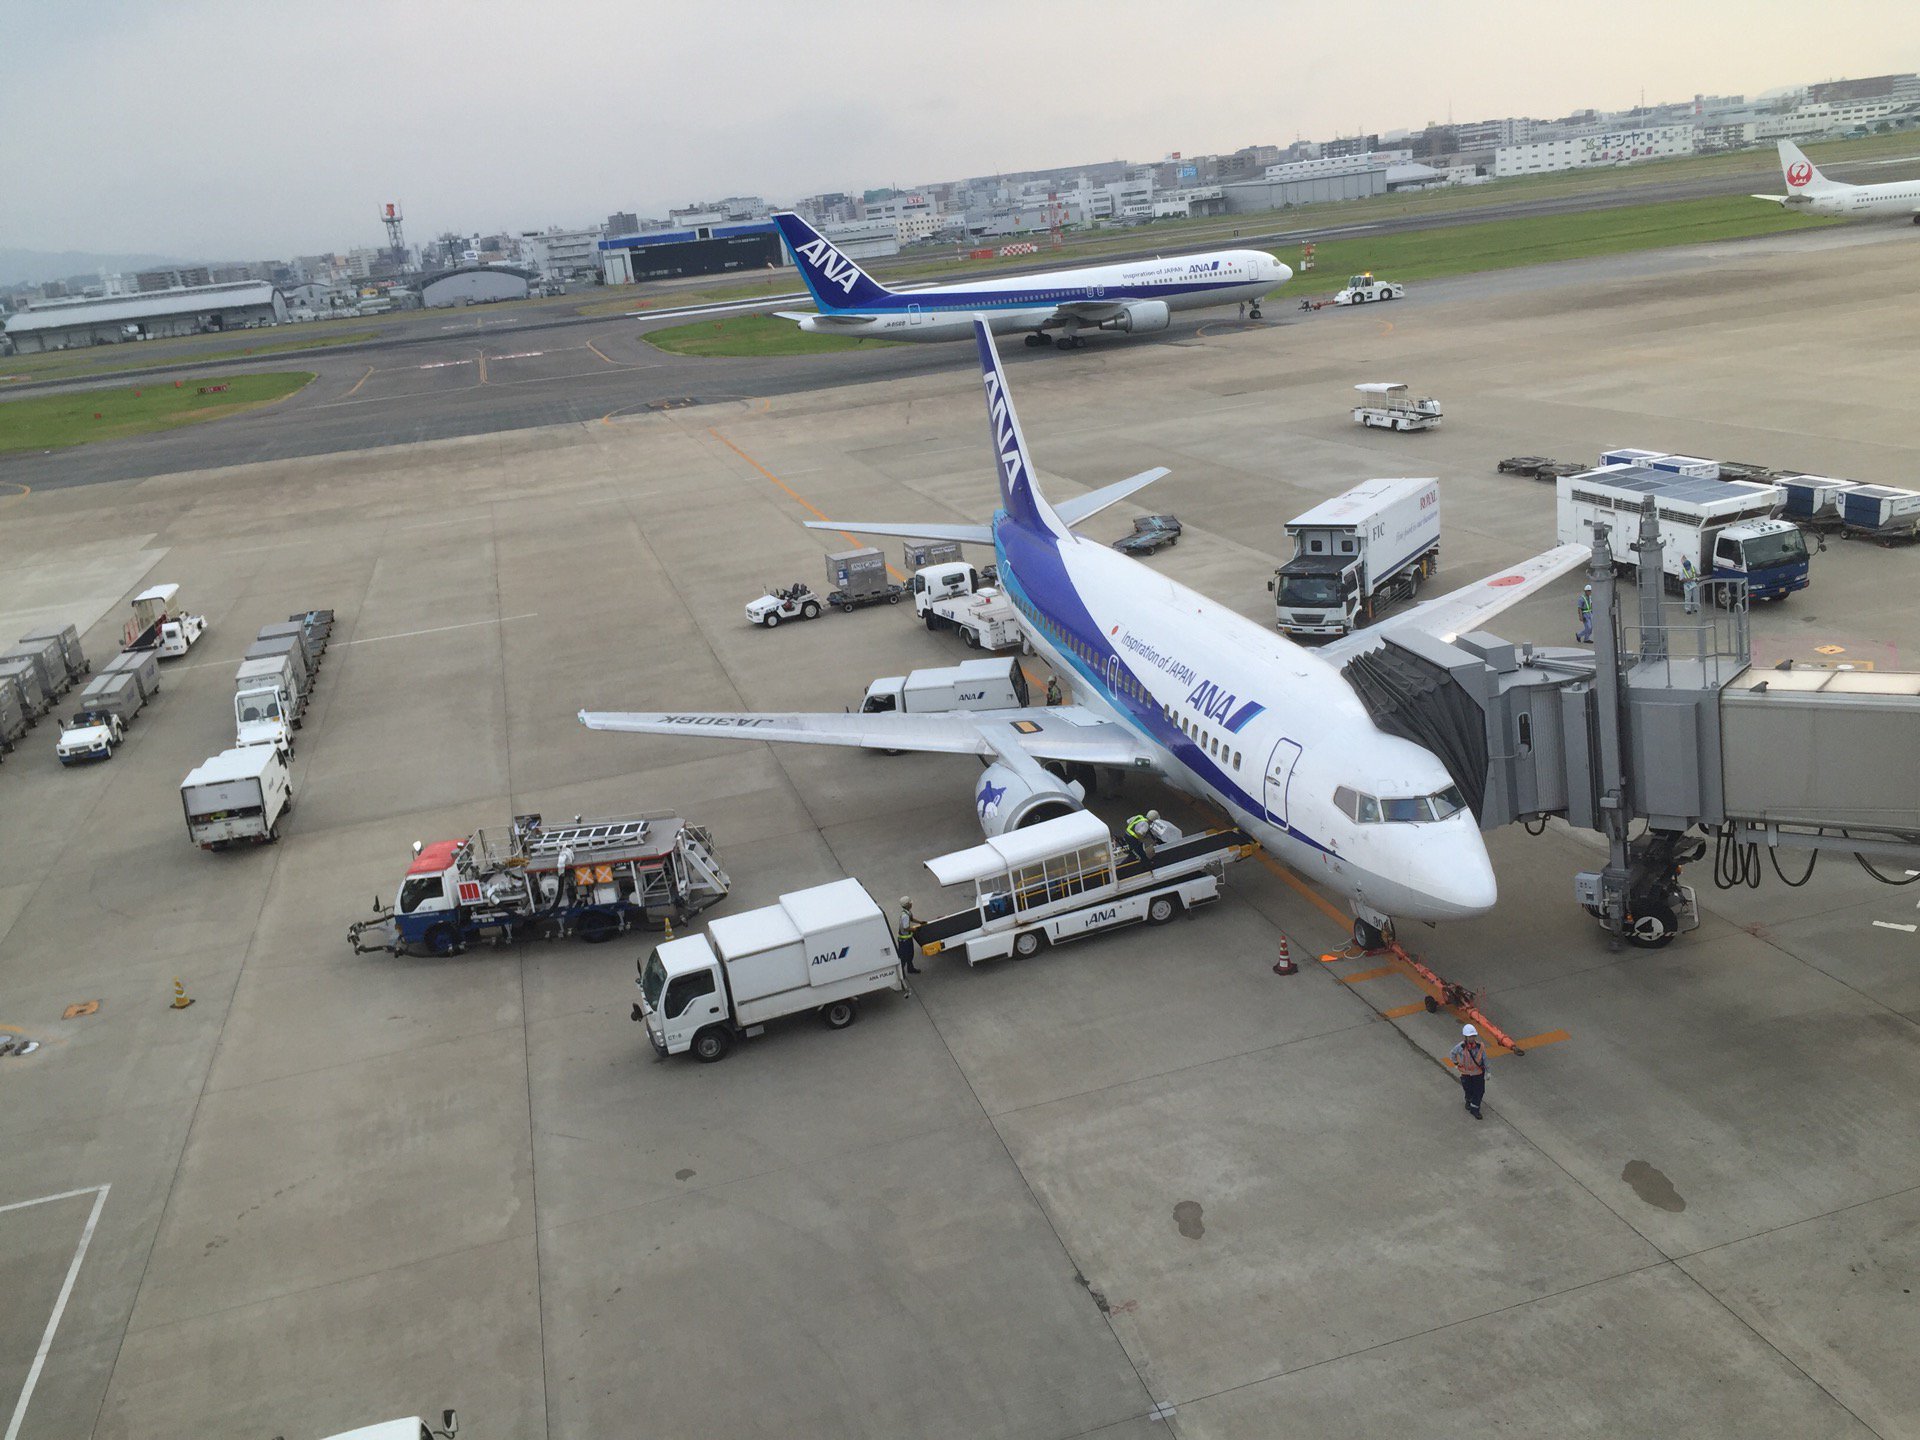 飛行機から荷物が出てくる。 (@ 福岡空港 in 福岡市, 福岡県) https://t.co/6dWMq6Ca9J https://t.co/KAkHwnMcn3